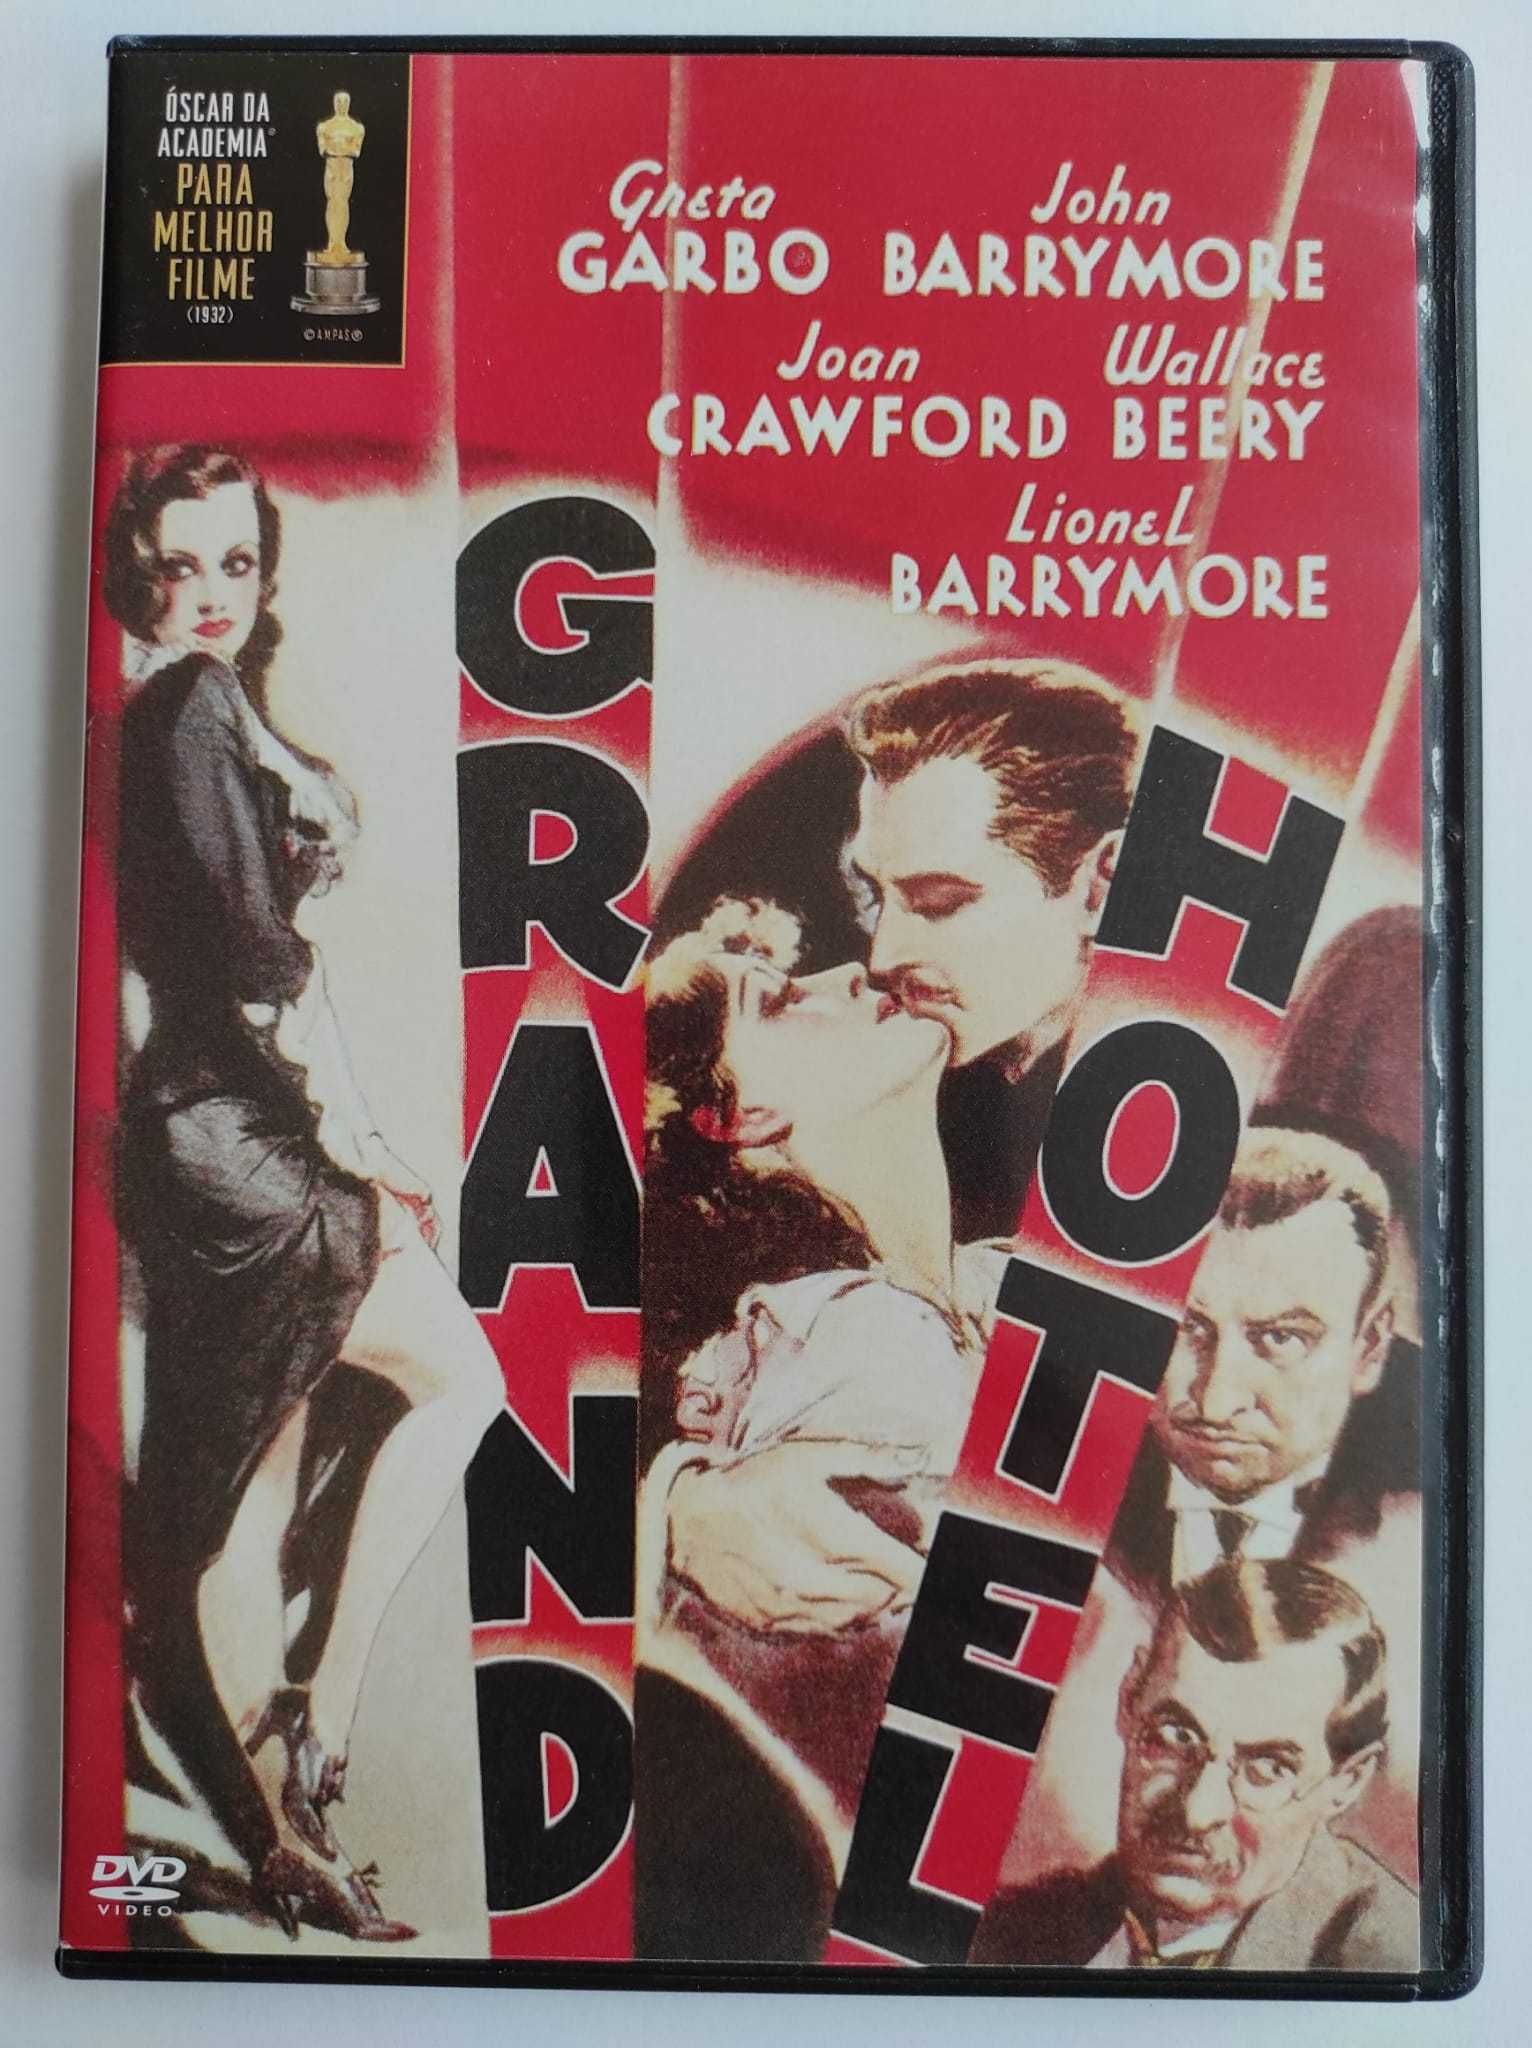 DVD “Grand Hotel”, com Greta Garbo. Raro.